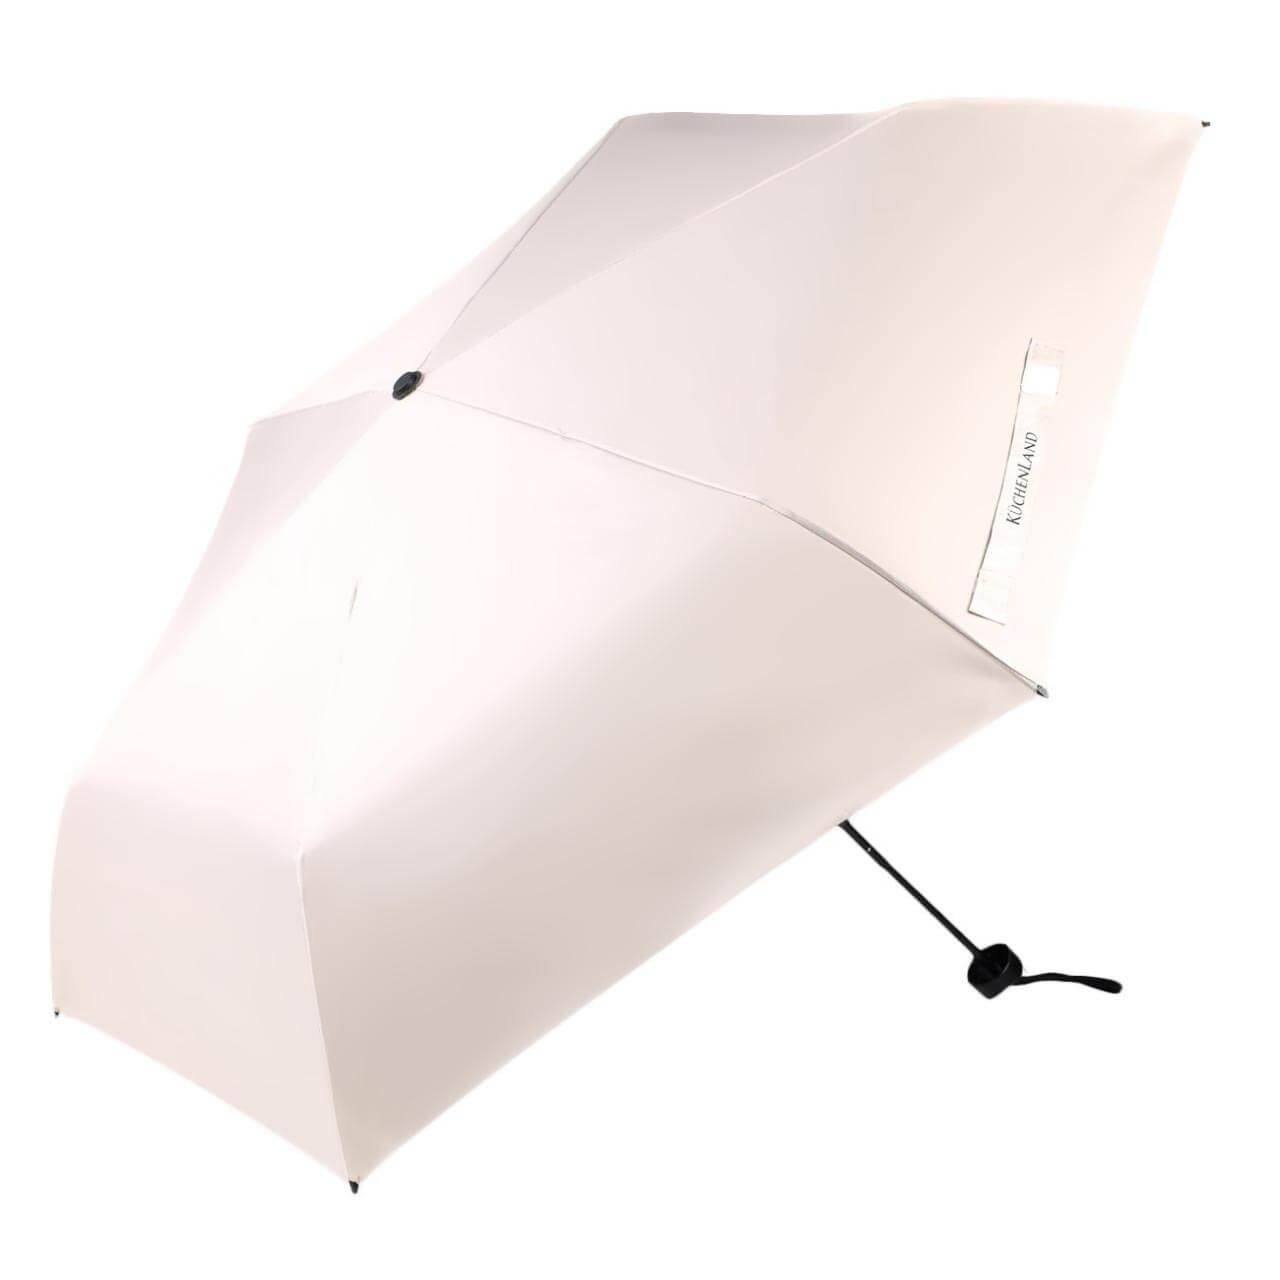 Зонт, 52 см, складной, двусторонний, эпонж, бежево-черный, Rainy day верстак складной fit